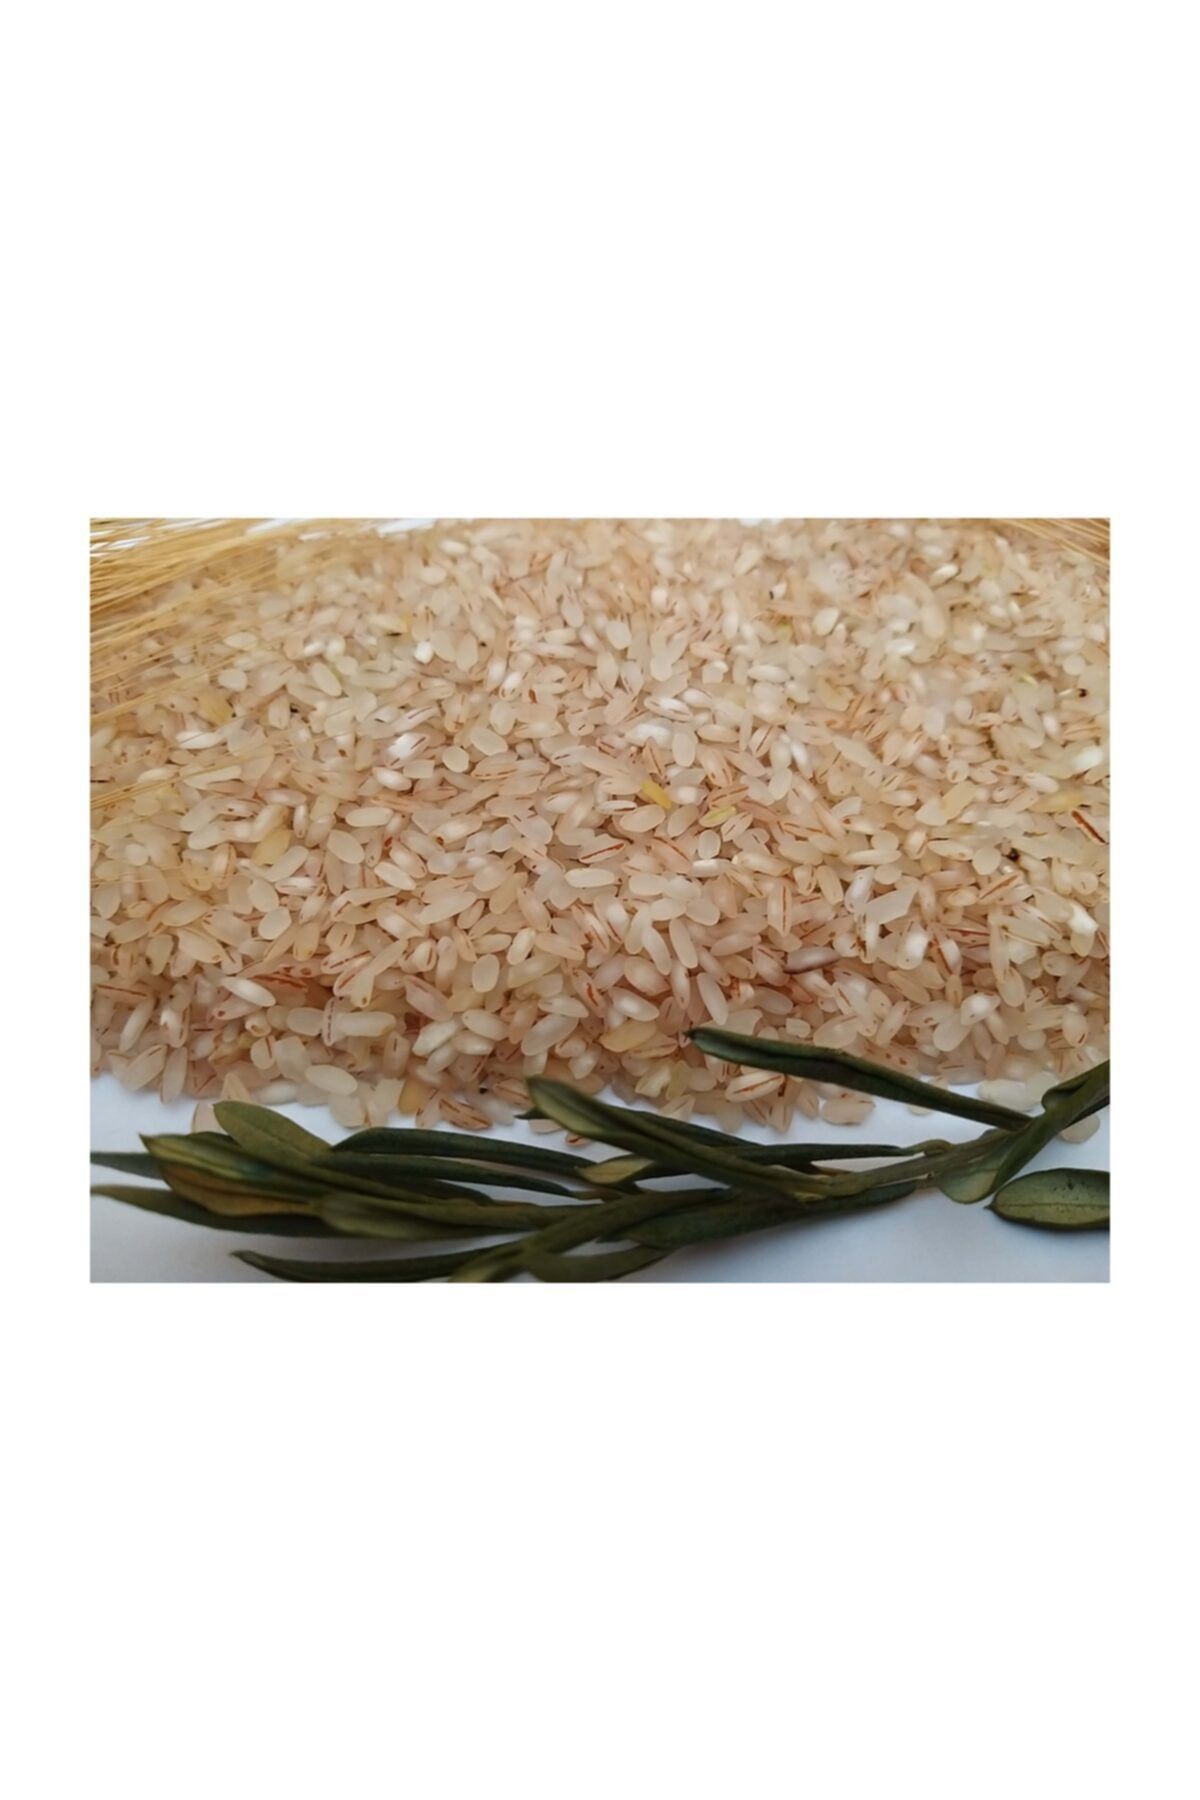 Şahin Çiftlik Yerli Kepekli Kırmızı Damarlı Pirinç(1 kg)